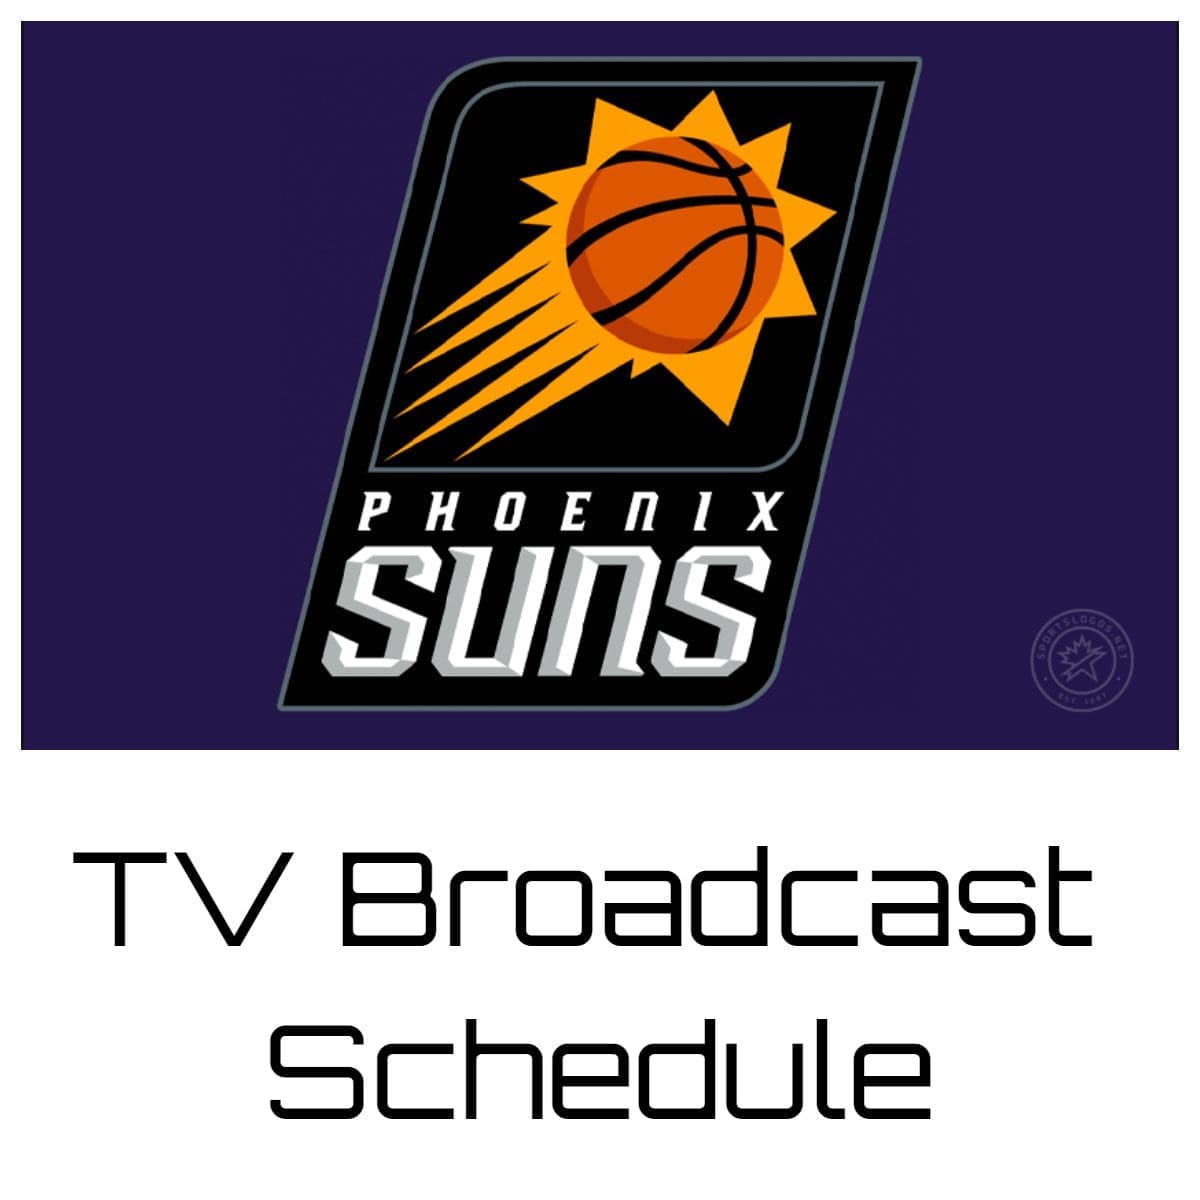 Phoenix Suns TV Broadcast Schedule